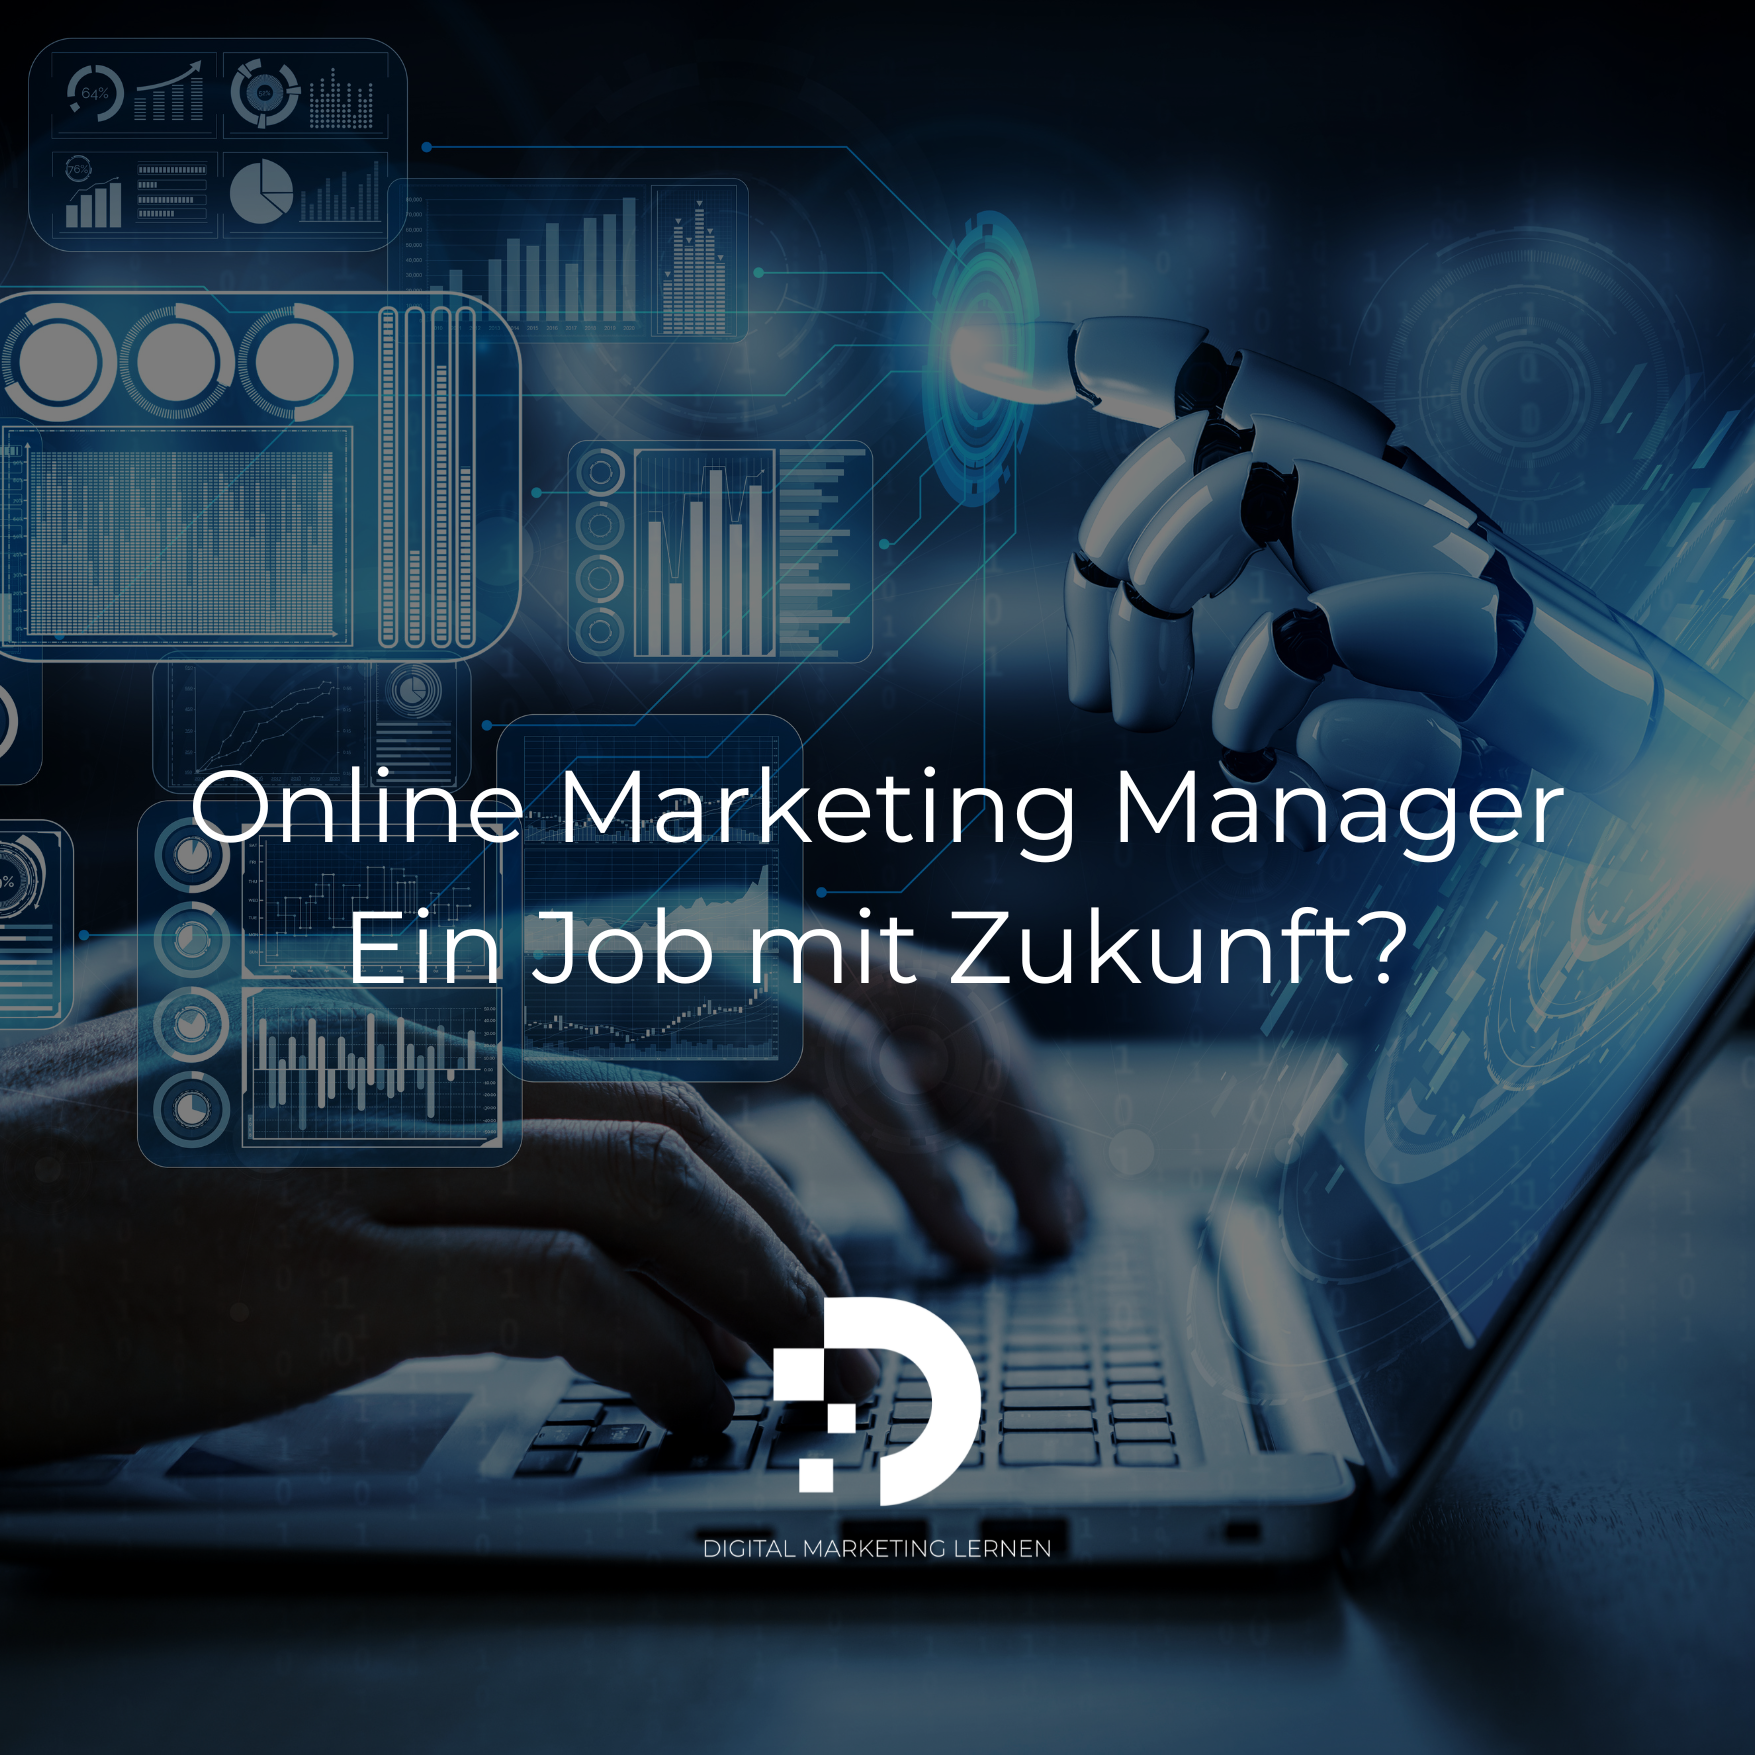 Online Marketing Manager | Ein Job mit Zukunft?